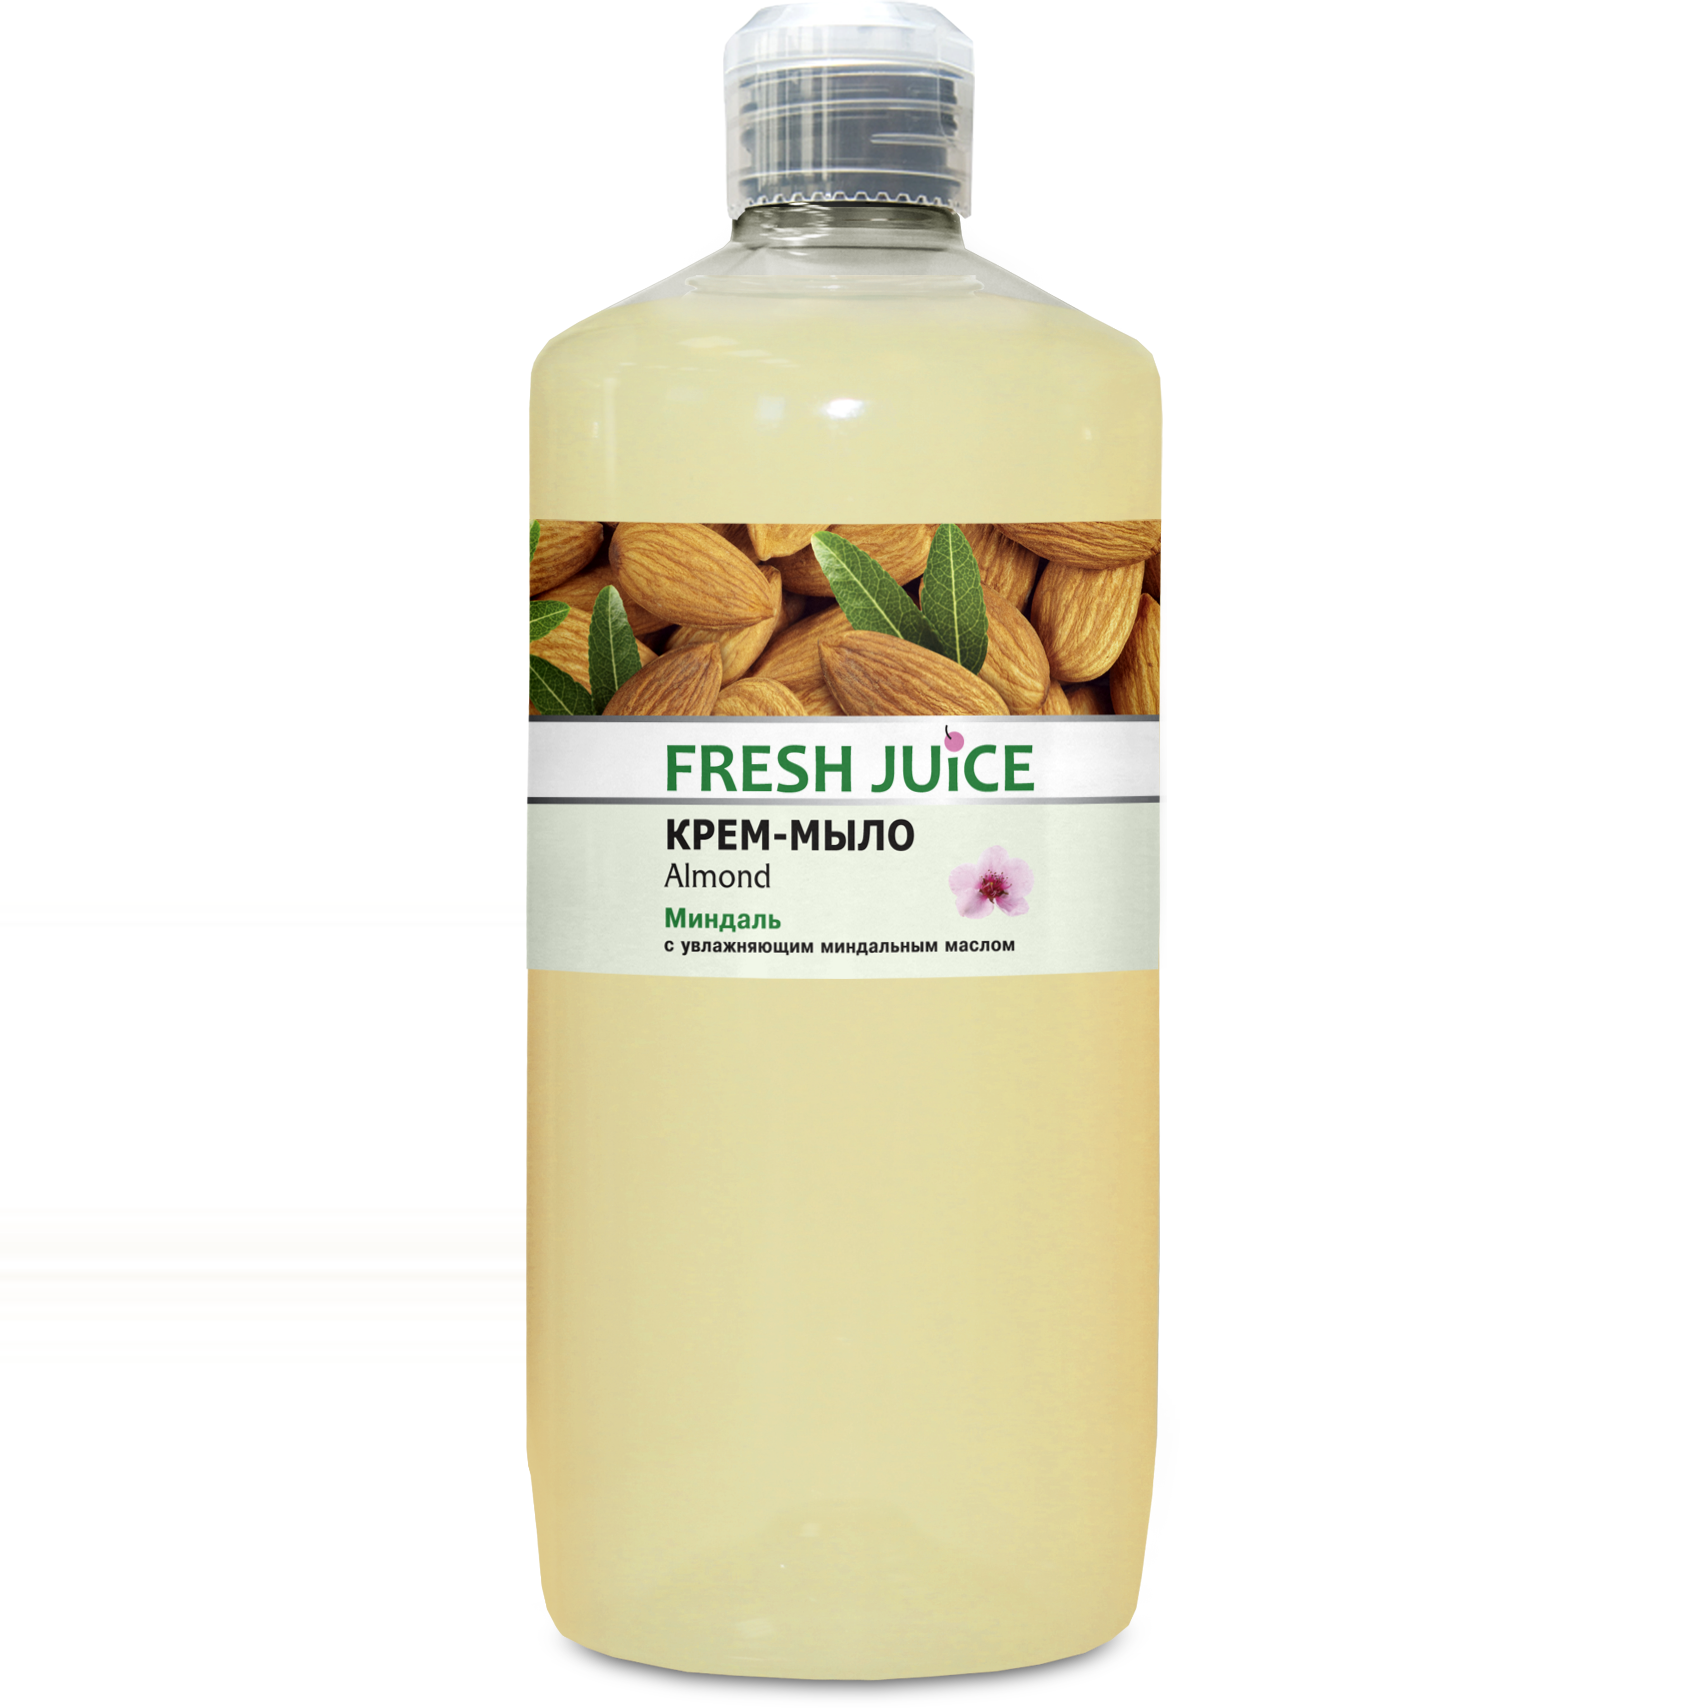 Крем-мыло Fresh Juice Almond, 1 л - фото 1